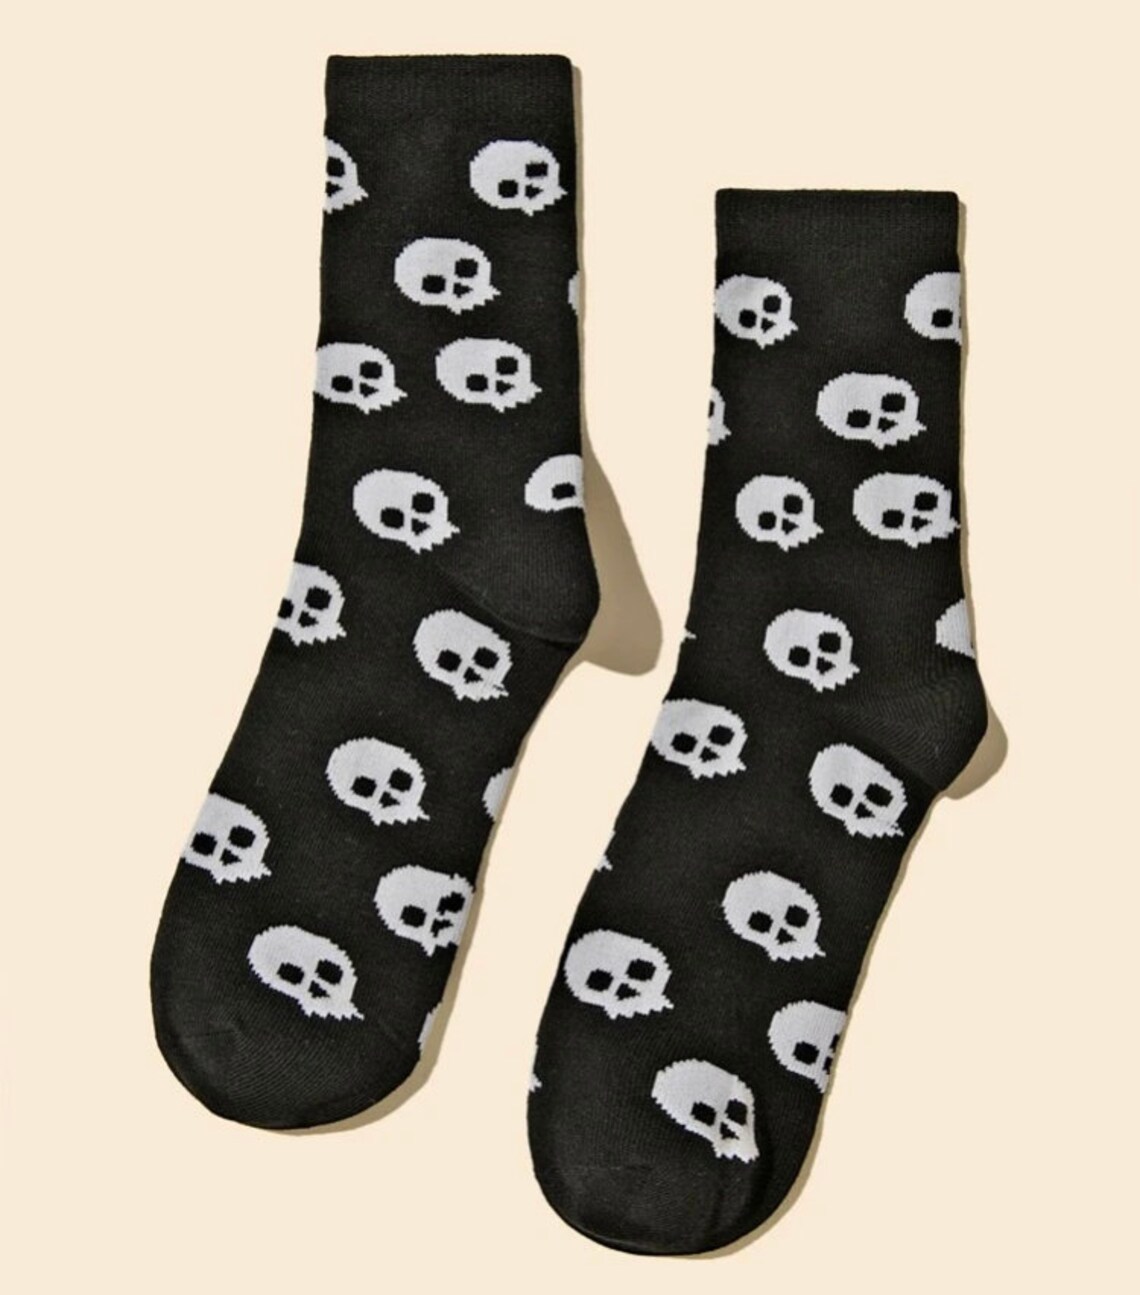 Skull Socks Black and White Skulls | Etsy